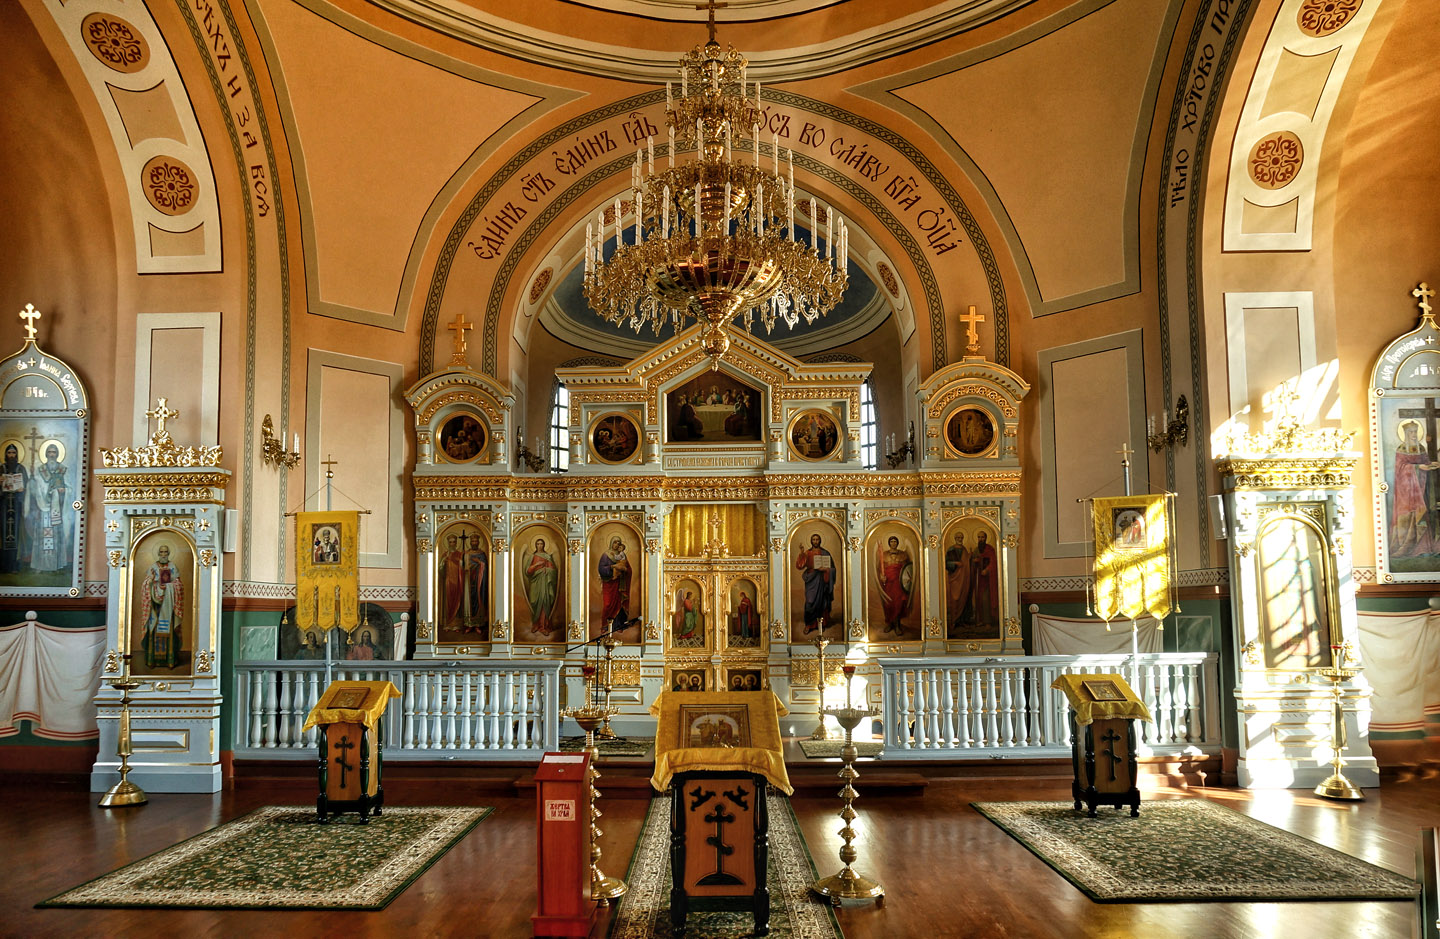 Cerkiew prawosławna św. św. Apostołów Piotra i Pawła w Sosnowicy